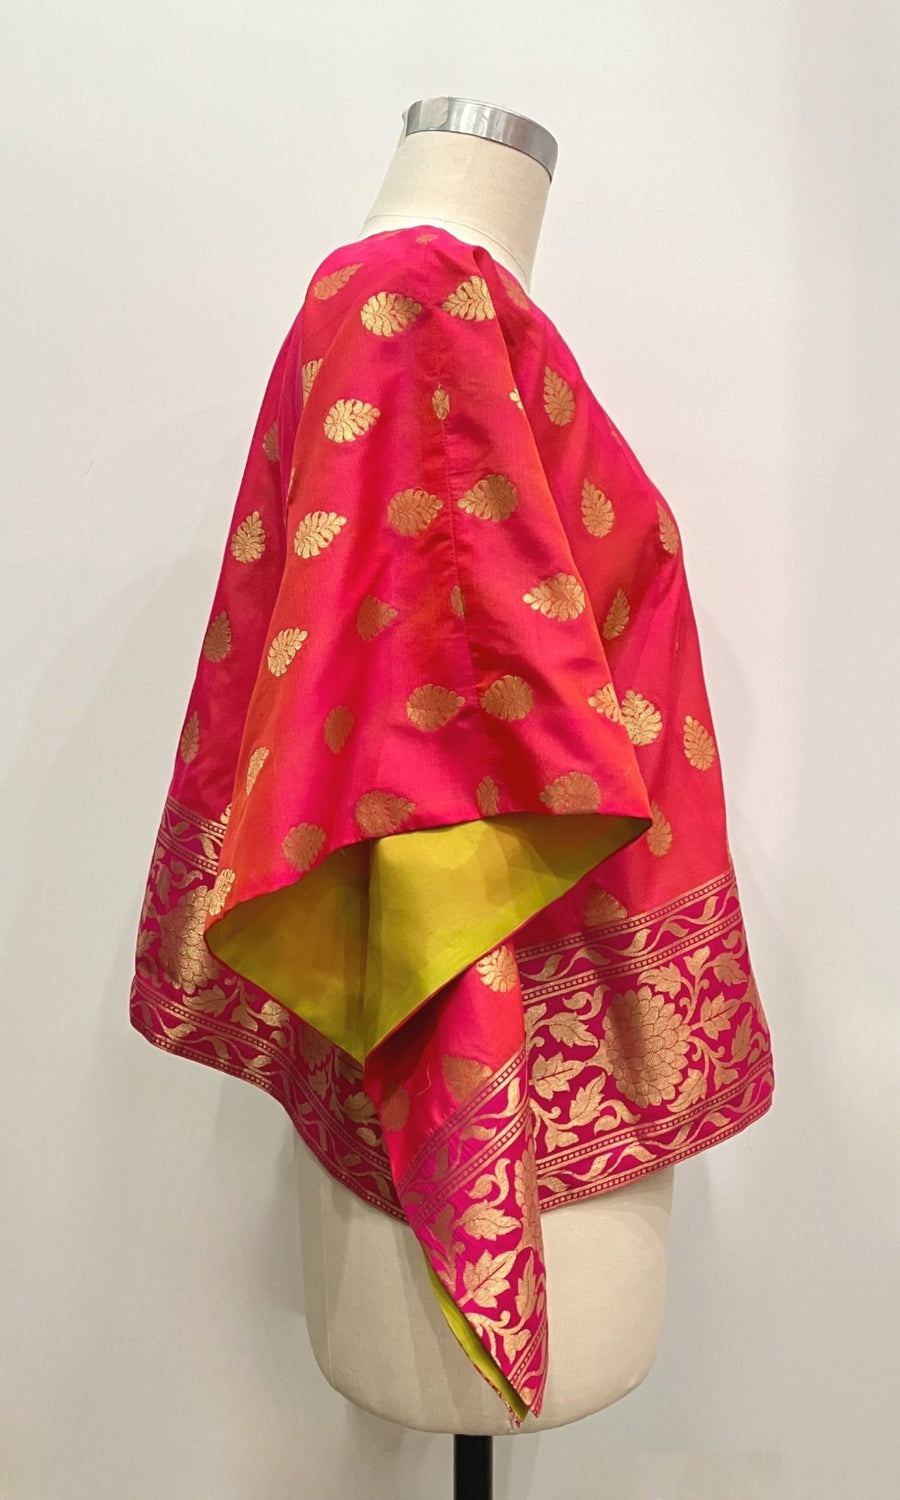 Hot Pink Sari Tunic Top